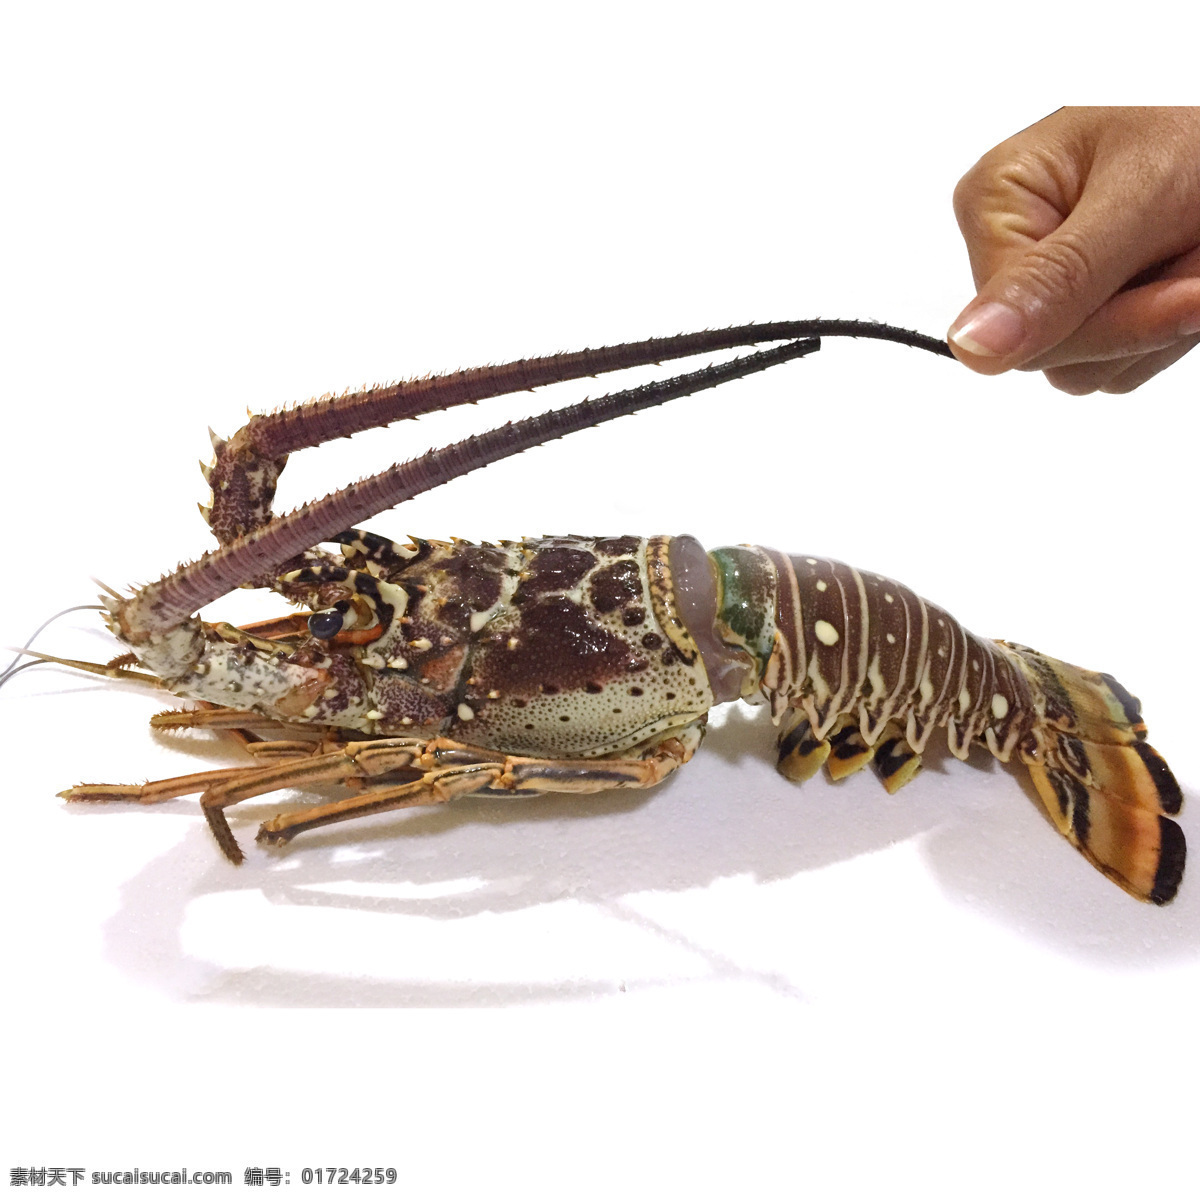 龙虾图片 龙虾 海鲜 深海龙虾 澳洲龙虾 加拿大龙虾 波士顿龙虾 节肢动物门 餐饮美食 传统美食